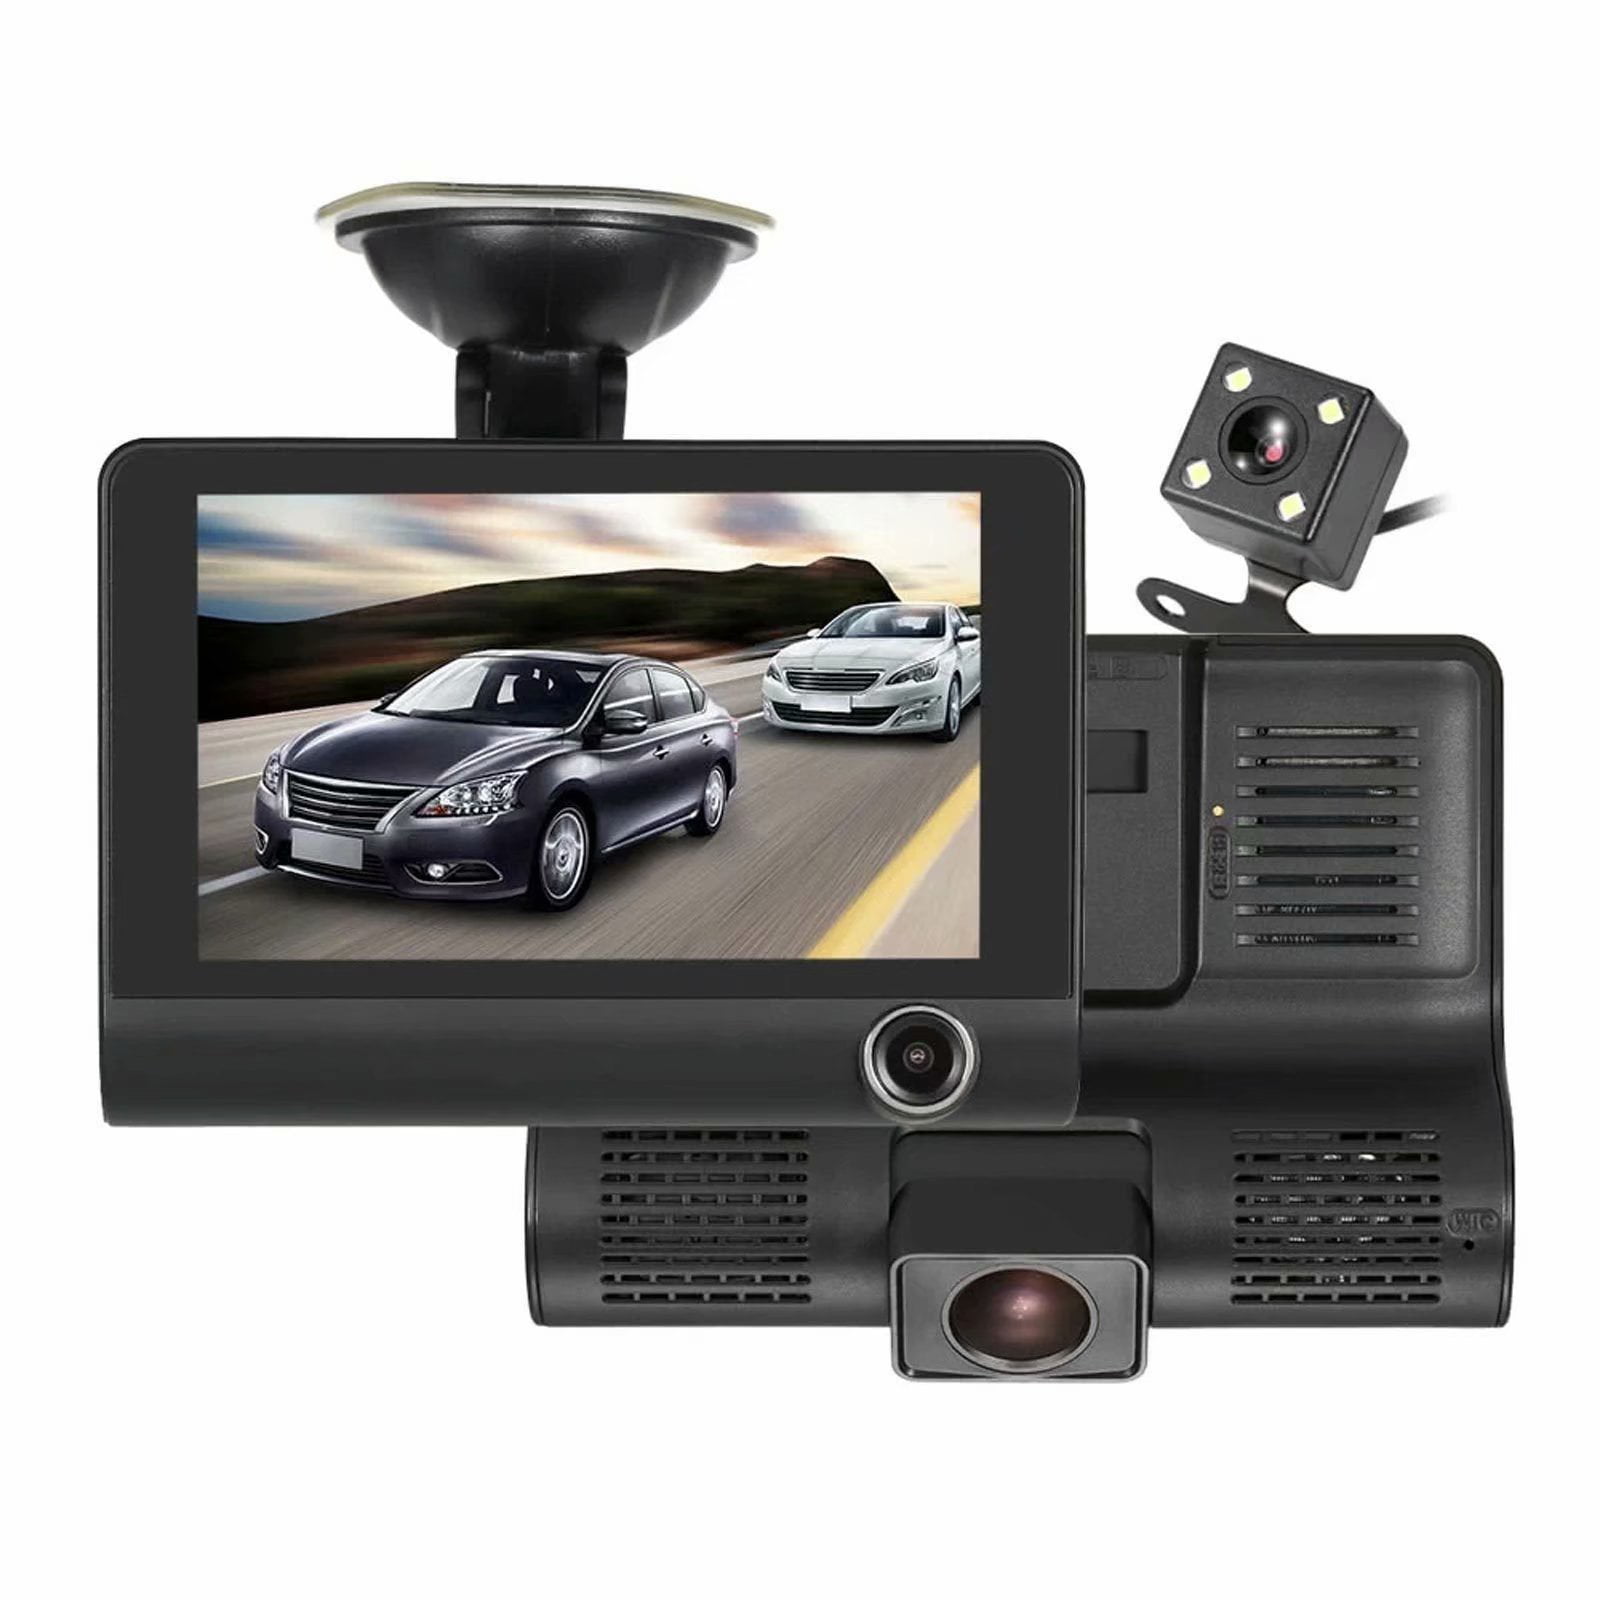 RearView Camera Mirror Three lens Car DVR 1080P Dashcam Video Recorder G-sensor